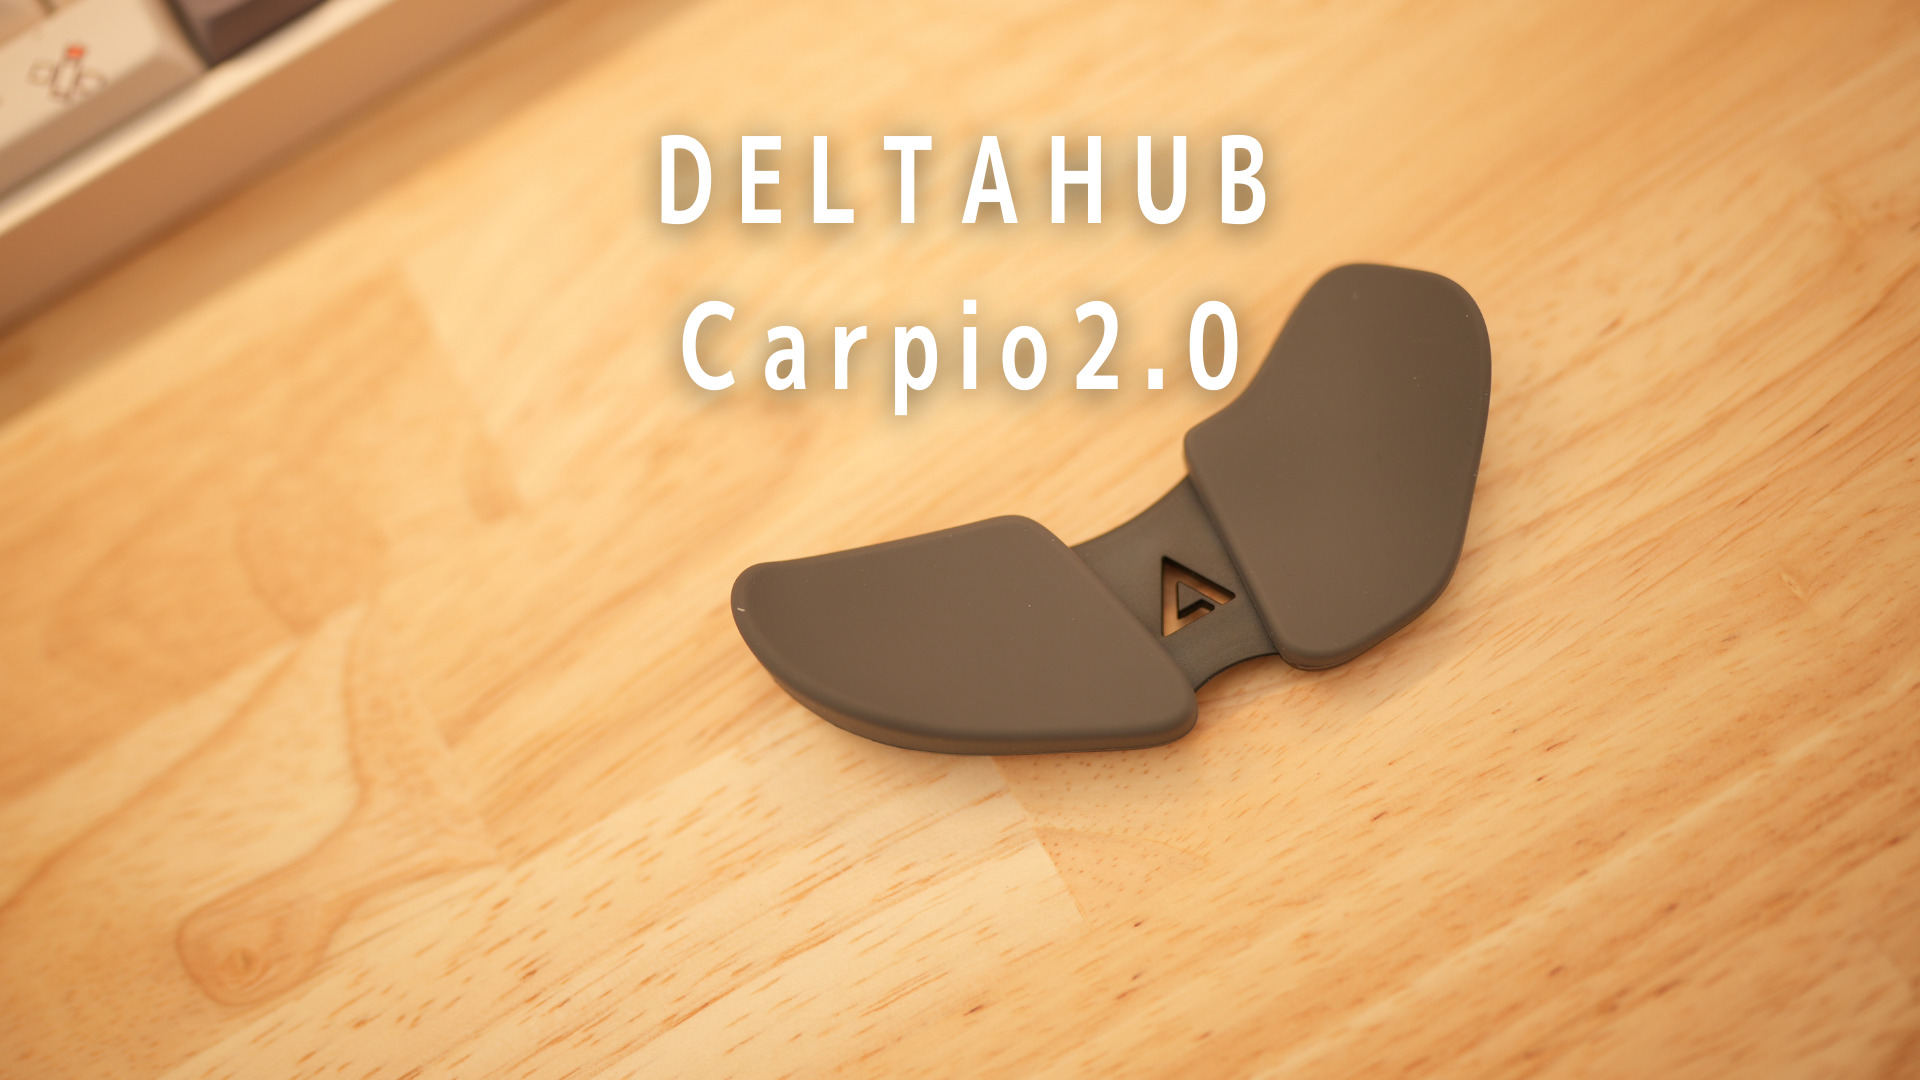 DELTAHUB Carpio2.0